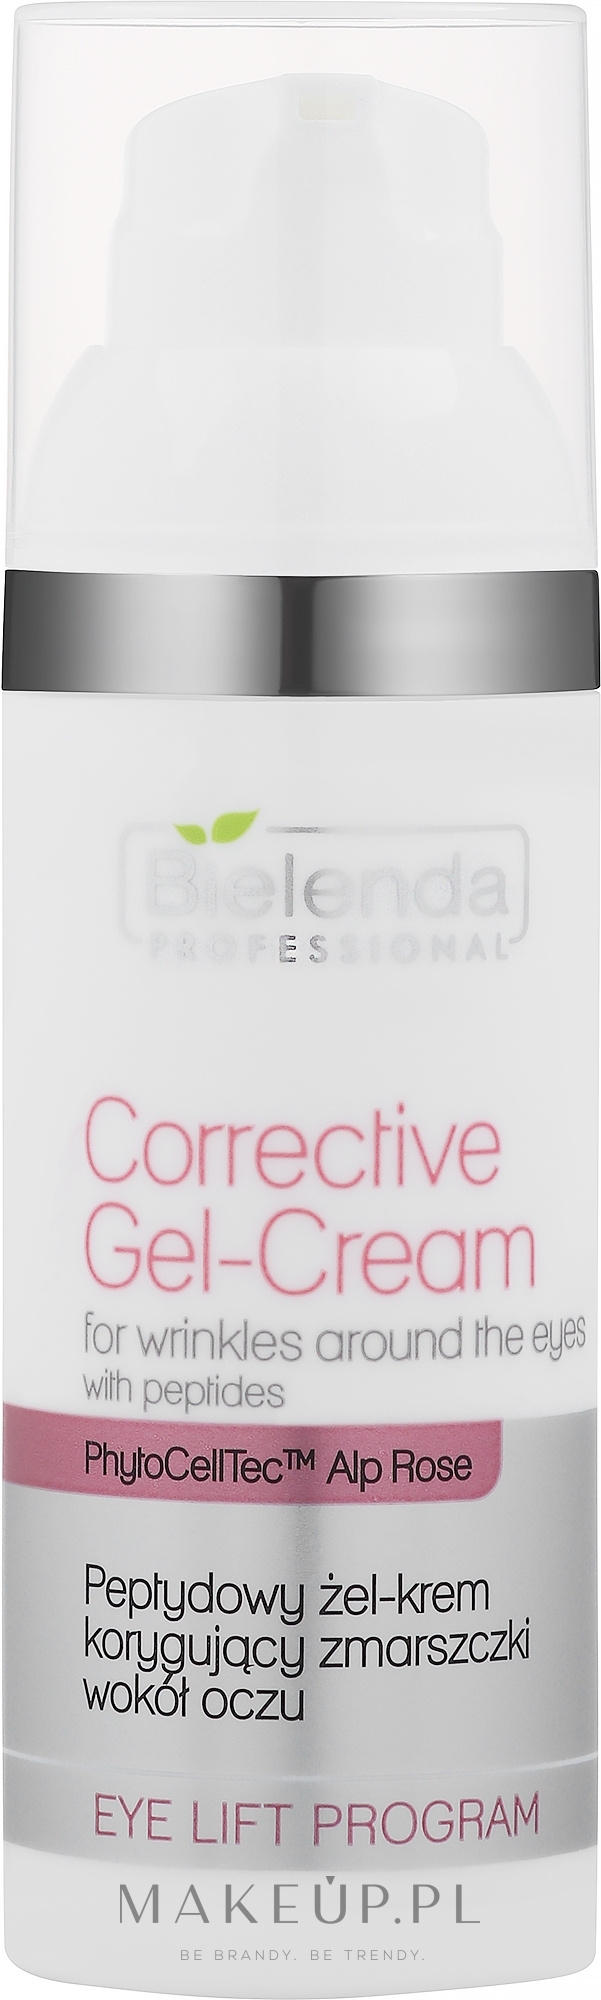 Peptydowy żel-krem korygujący zmarszczki wokół oczu - Bielenda Professional Eye Lift Program Corrective Gel-Cream — Zdjęcie 50 ml